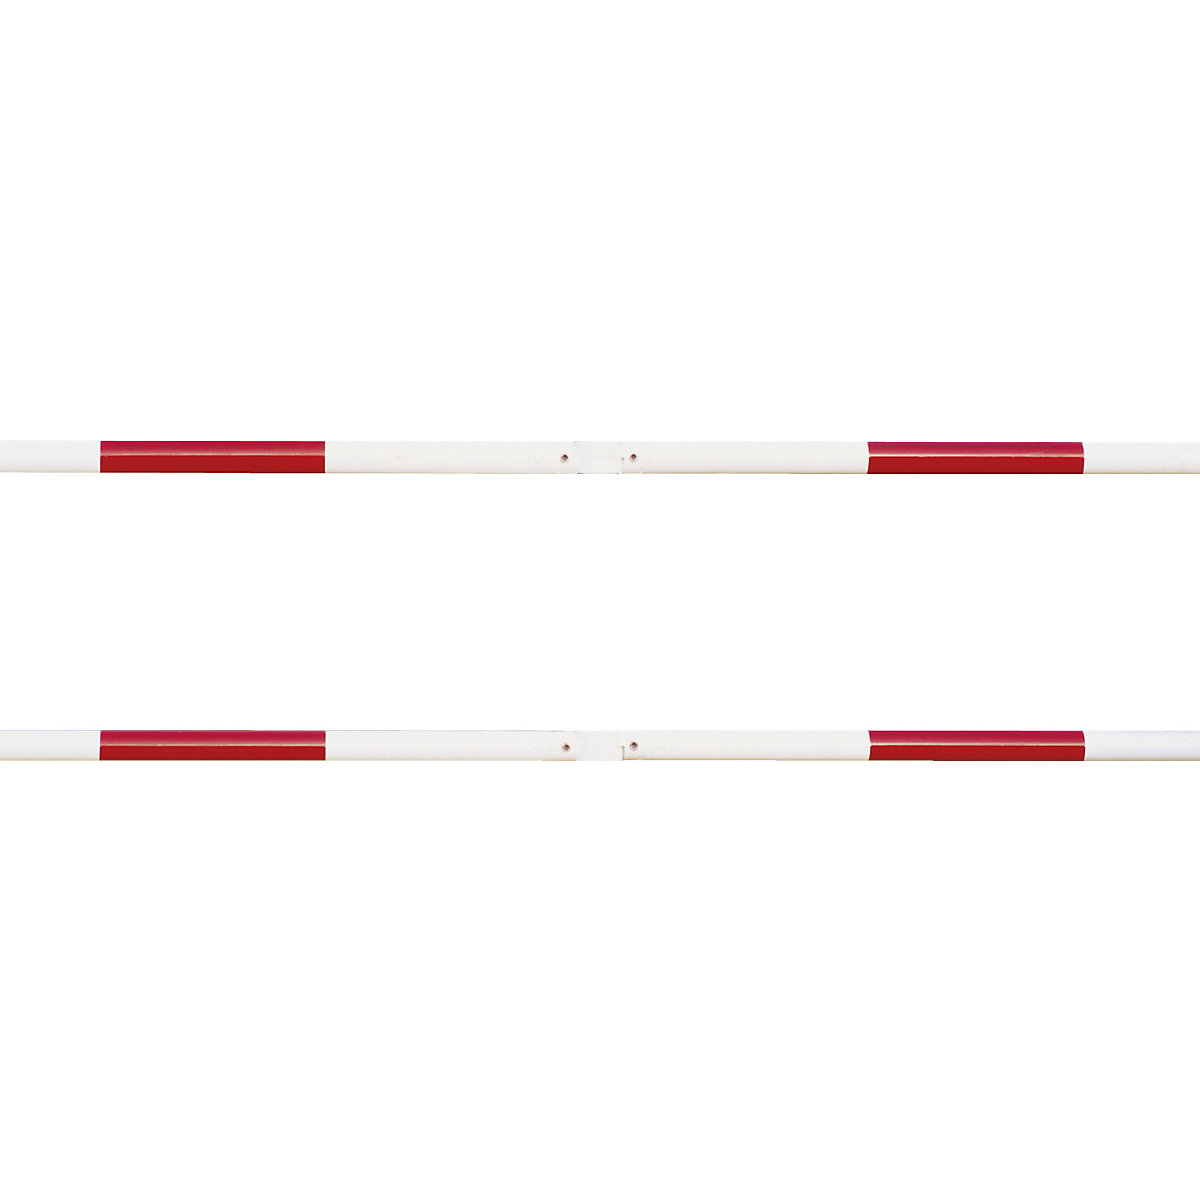 Balustradesysteem, dwarsbuis-Ø 60 mm, rood / wit, lengte 1500 mm